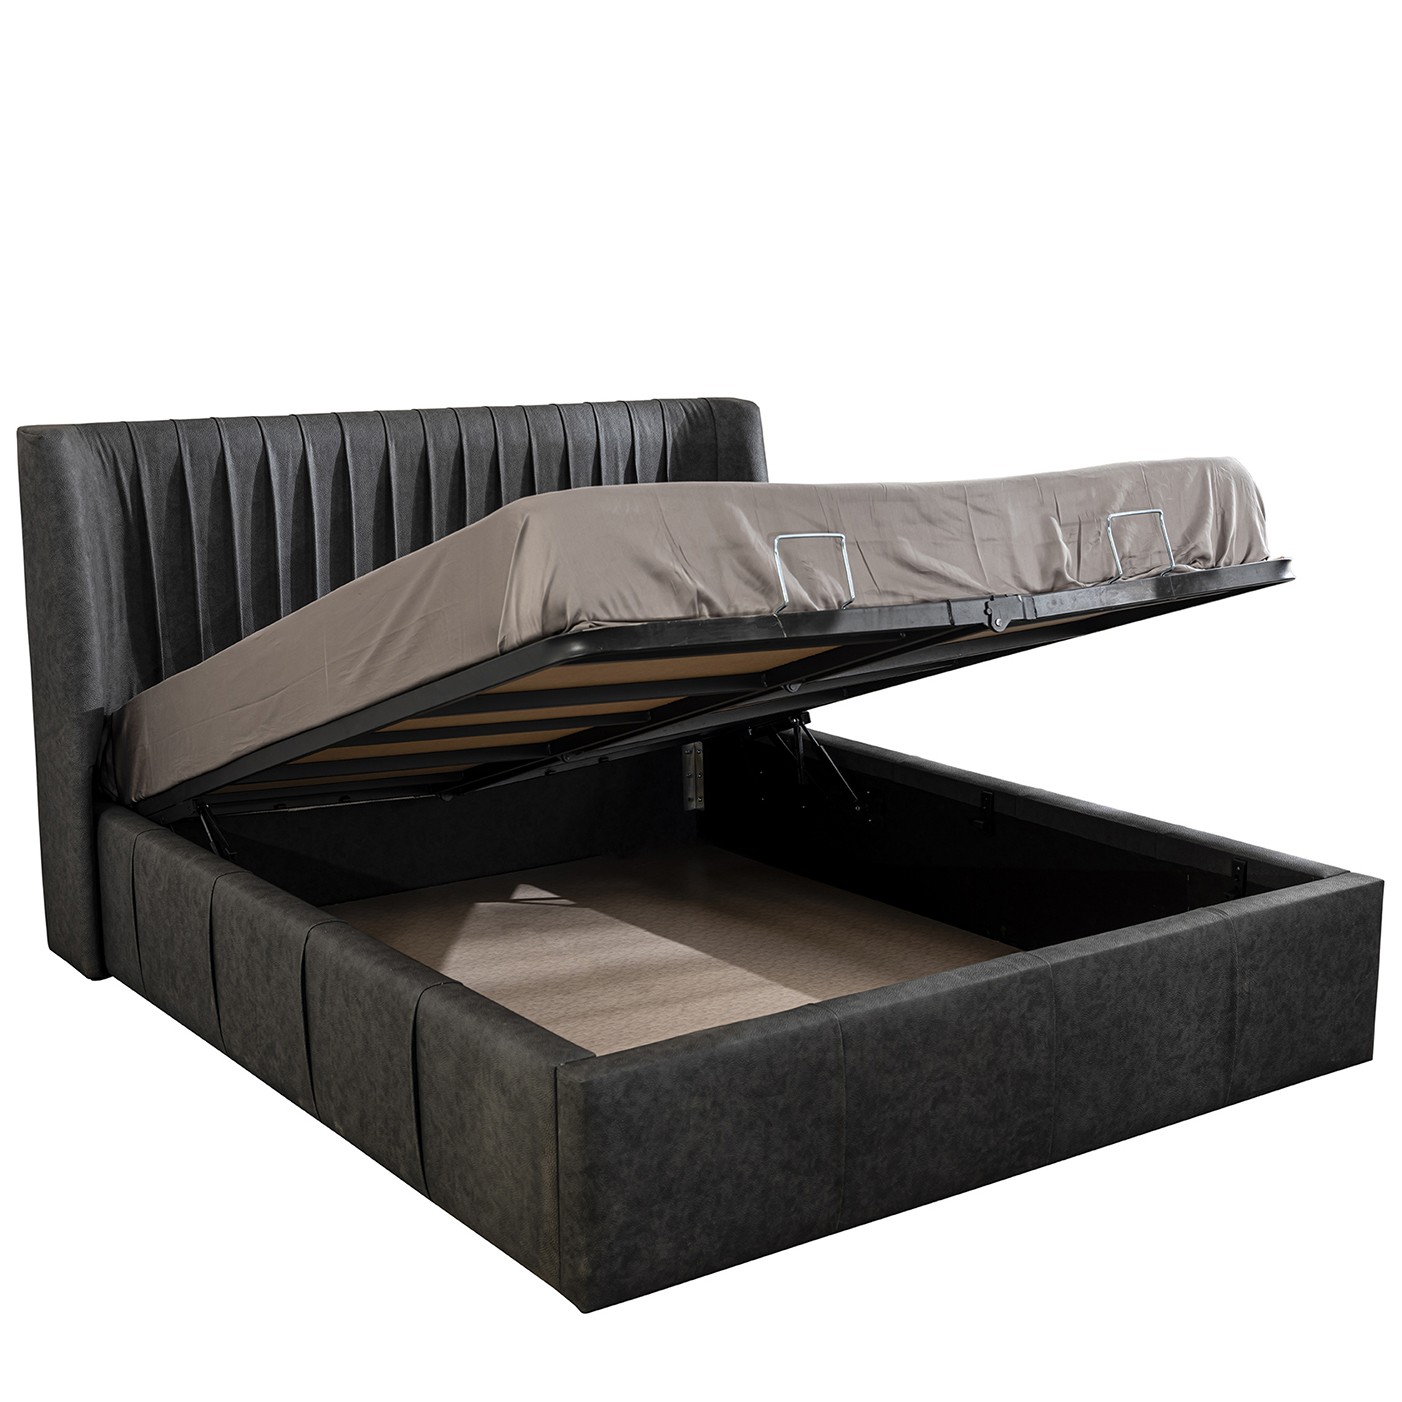 Prada Bed With Storage 180x200 cm